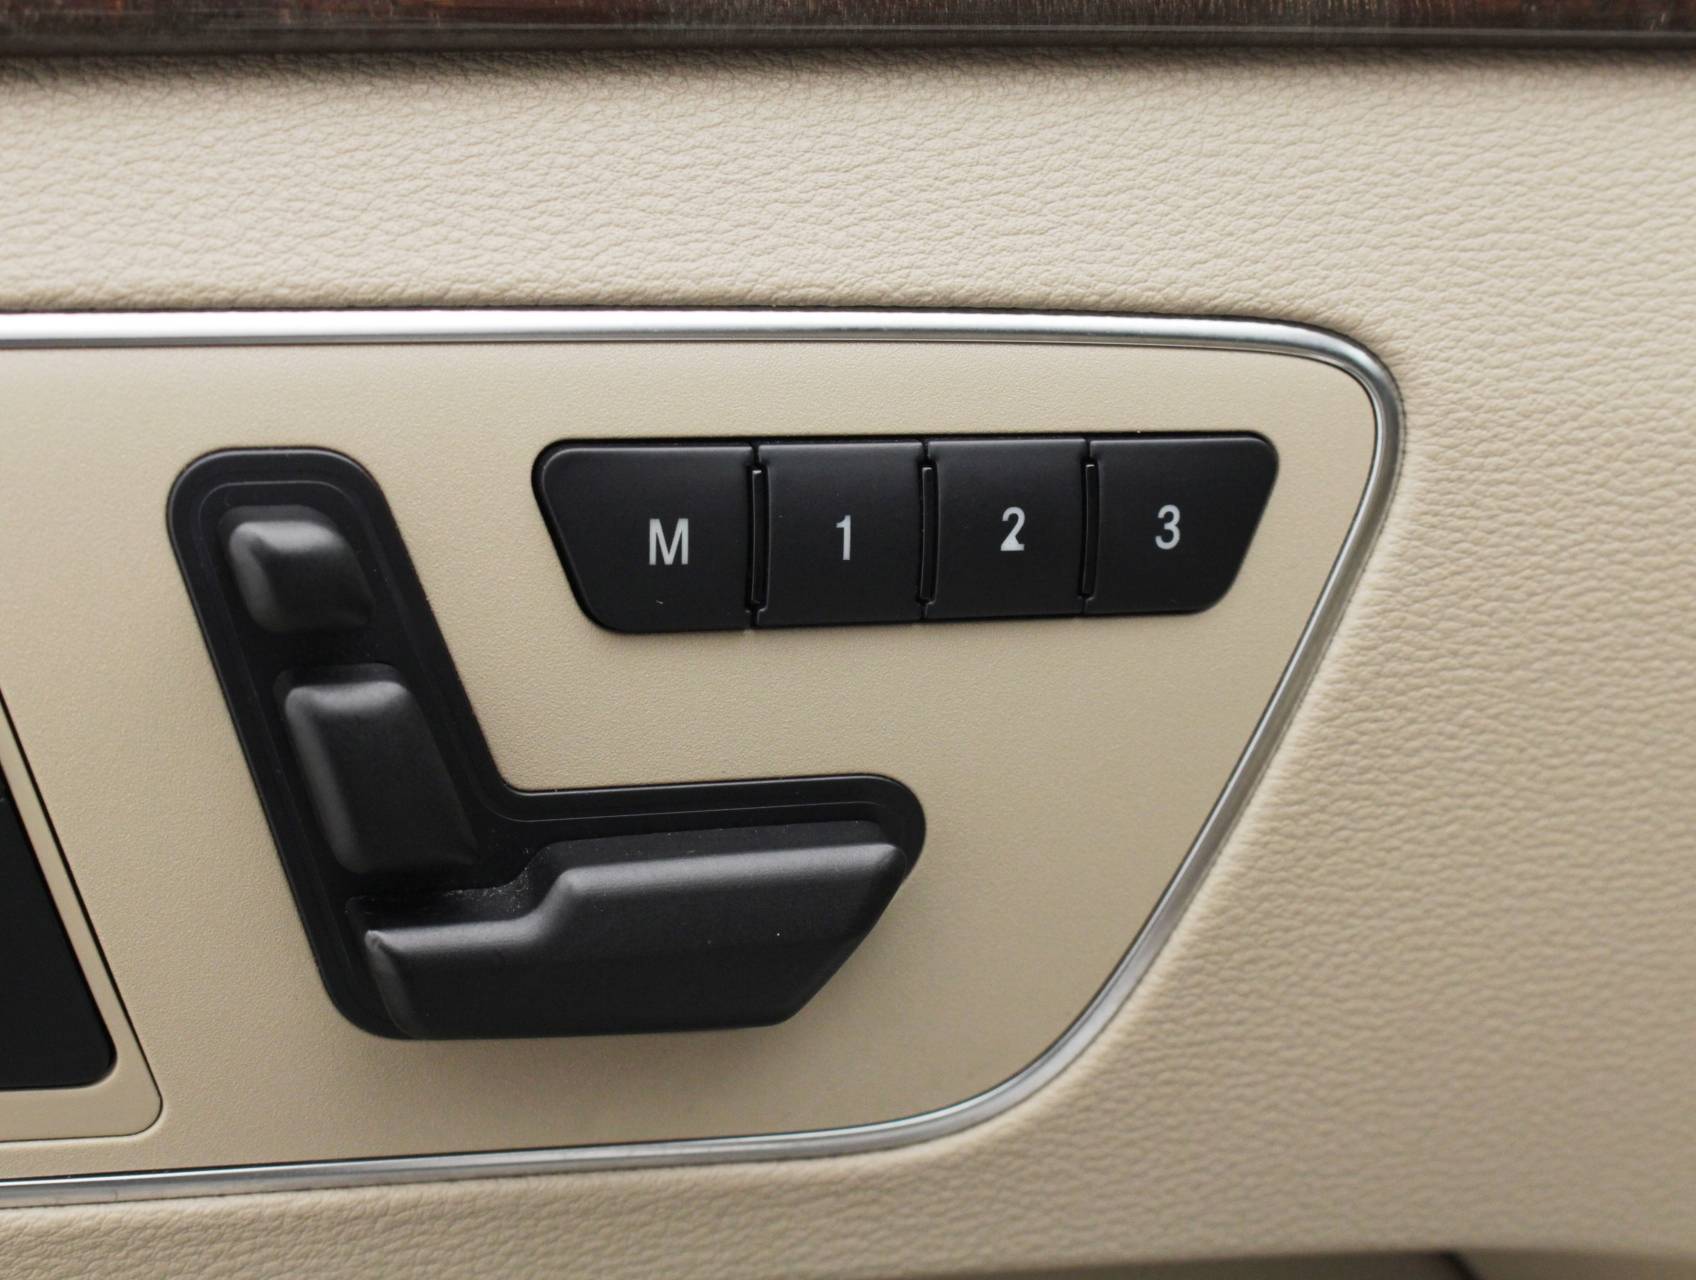 Florida Fine Cars - Used MERCEDES-BENZ E CLASS 2013 MIAMI E350